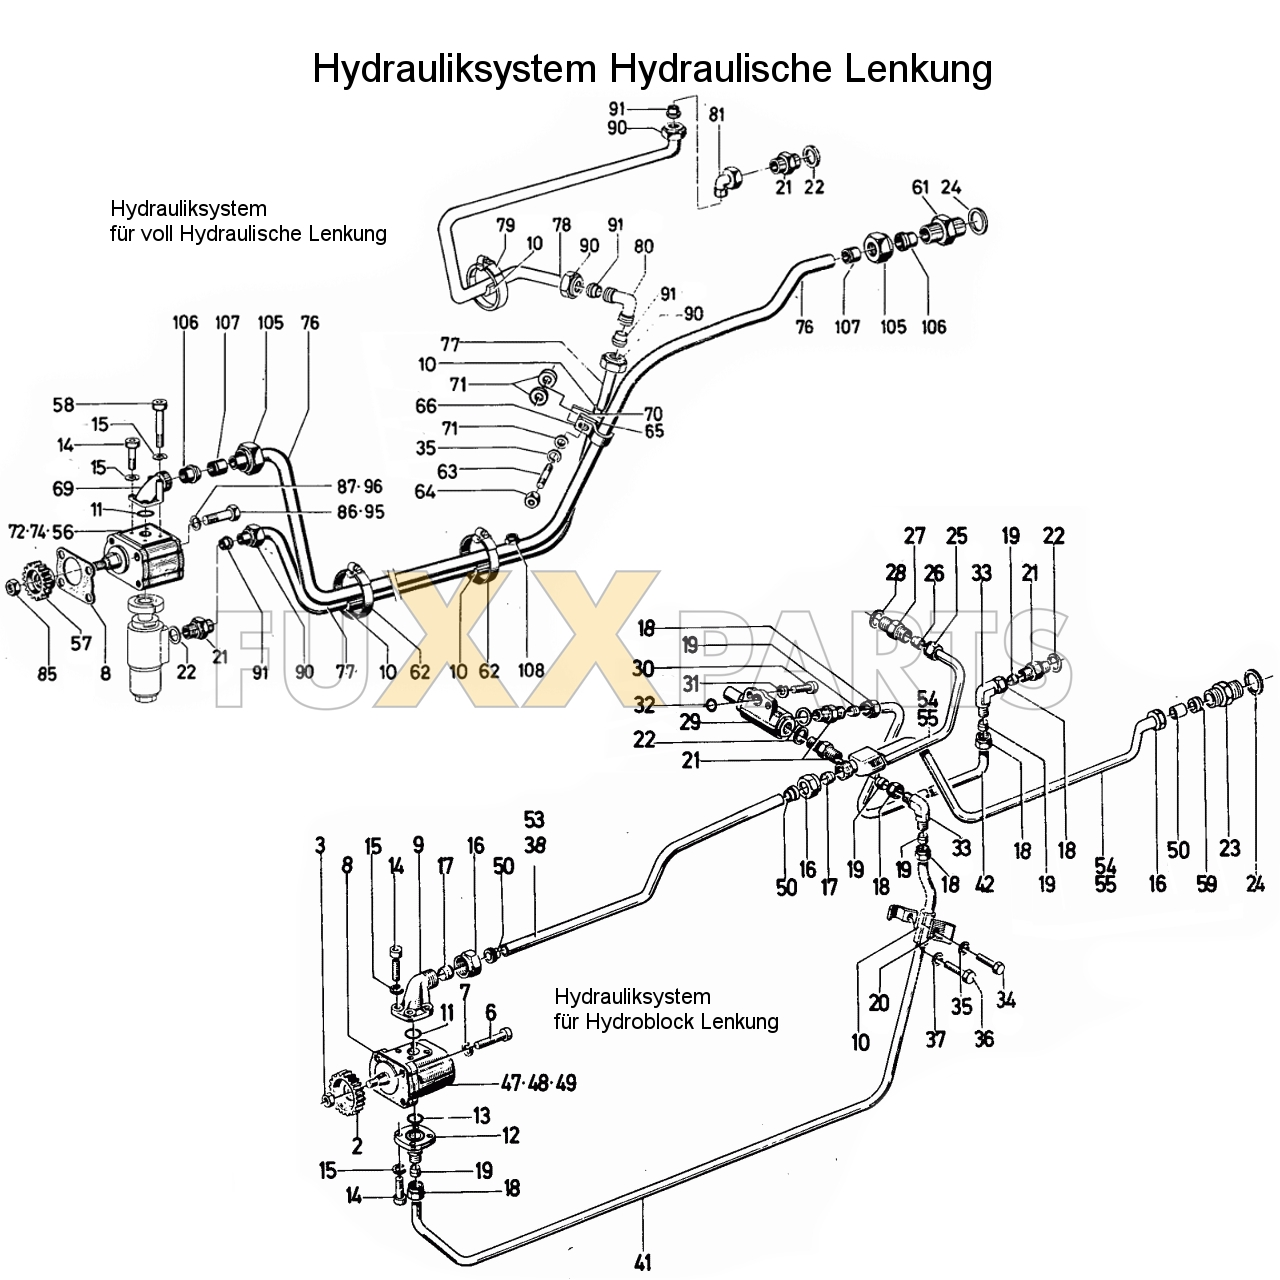 D 6806 Hydrauliksystem Hydraulische Lenkung